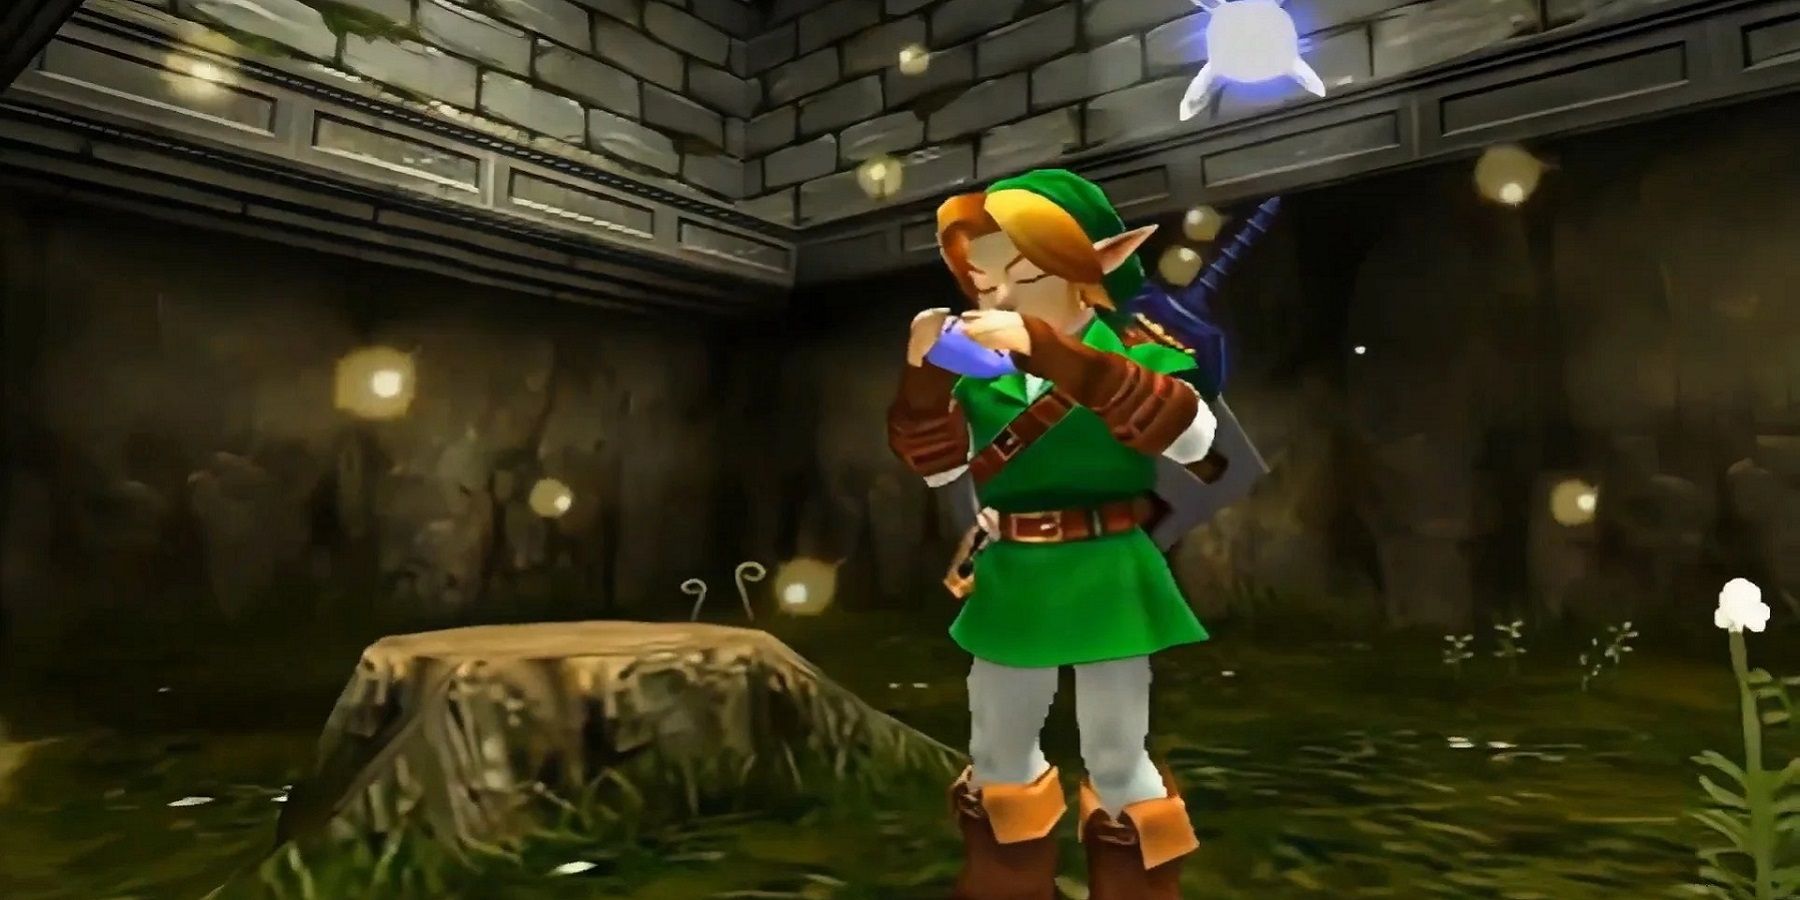 Скриншот из Ocarina of Time, на котором взрослый Линк играет на настоящей окарине.